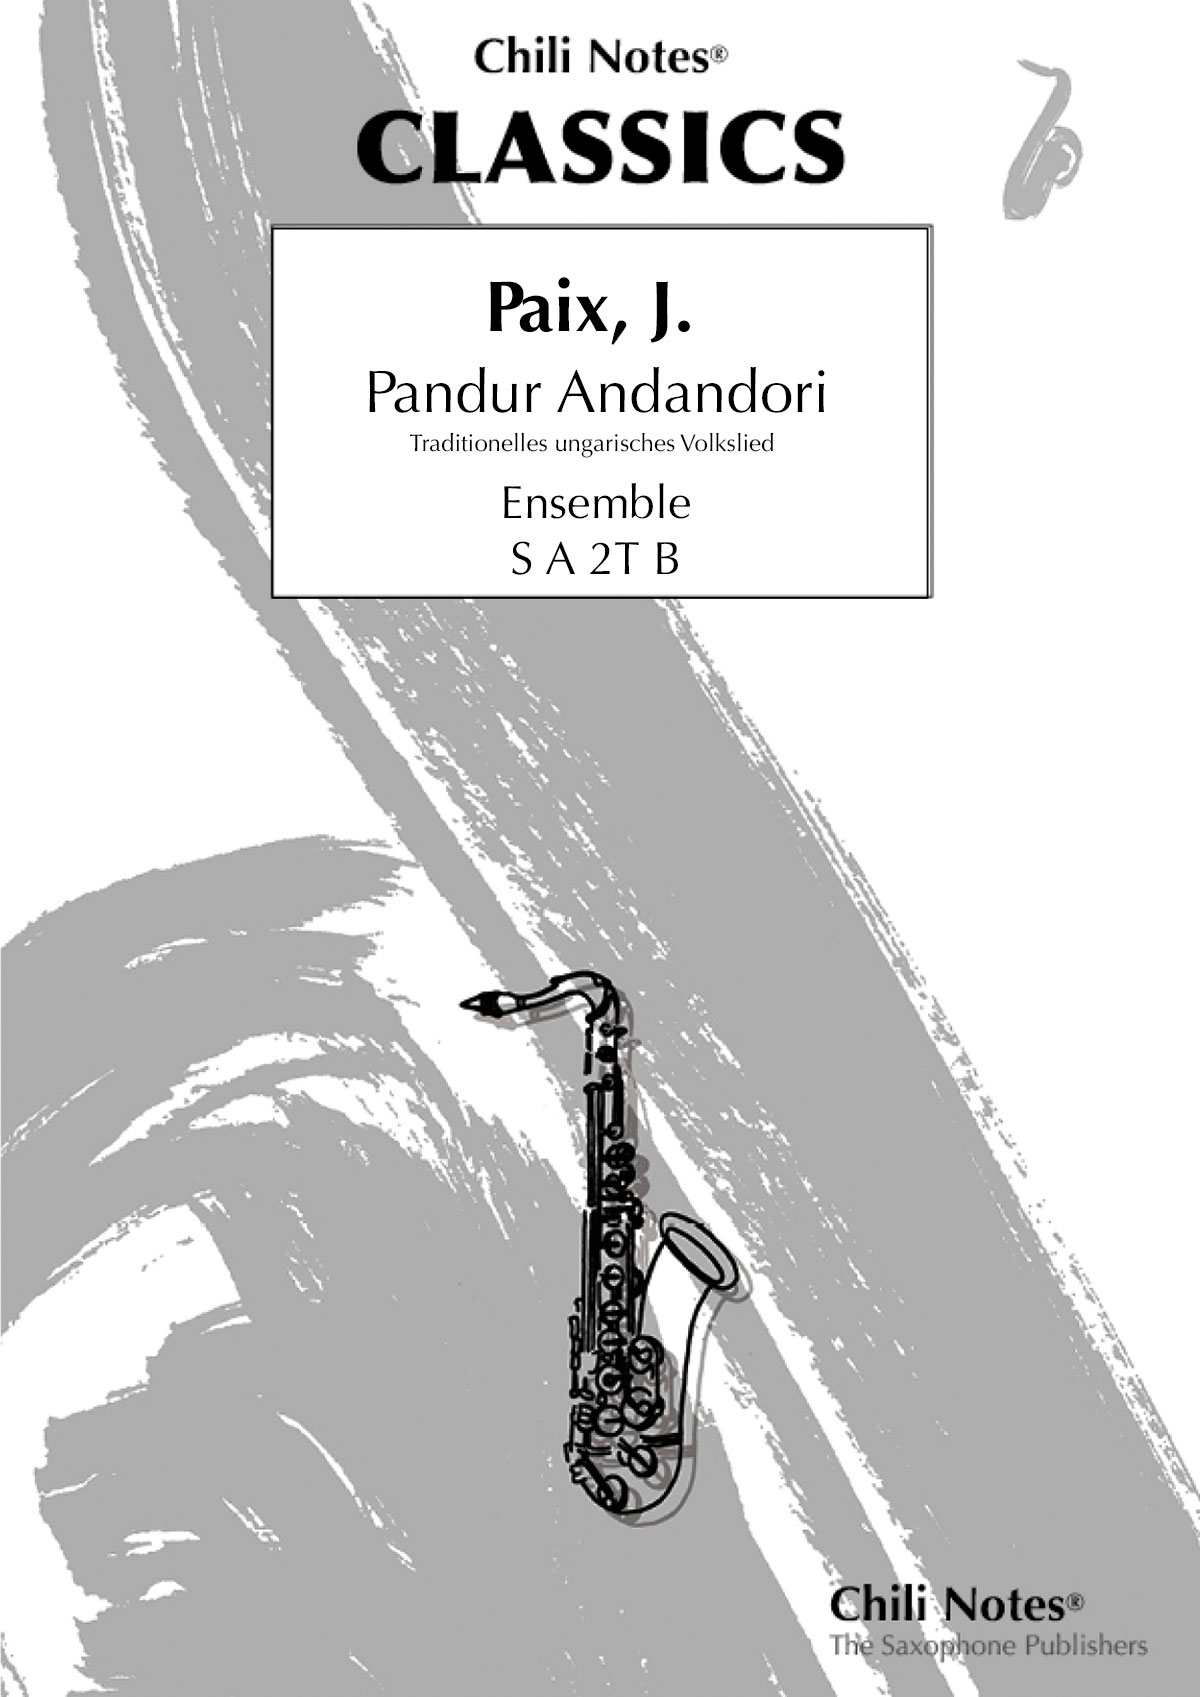 Pandur Andandori (PAIX JACOB)